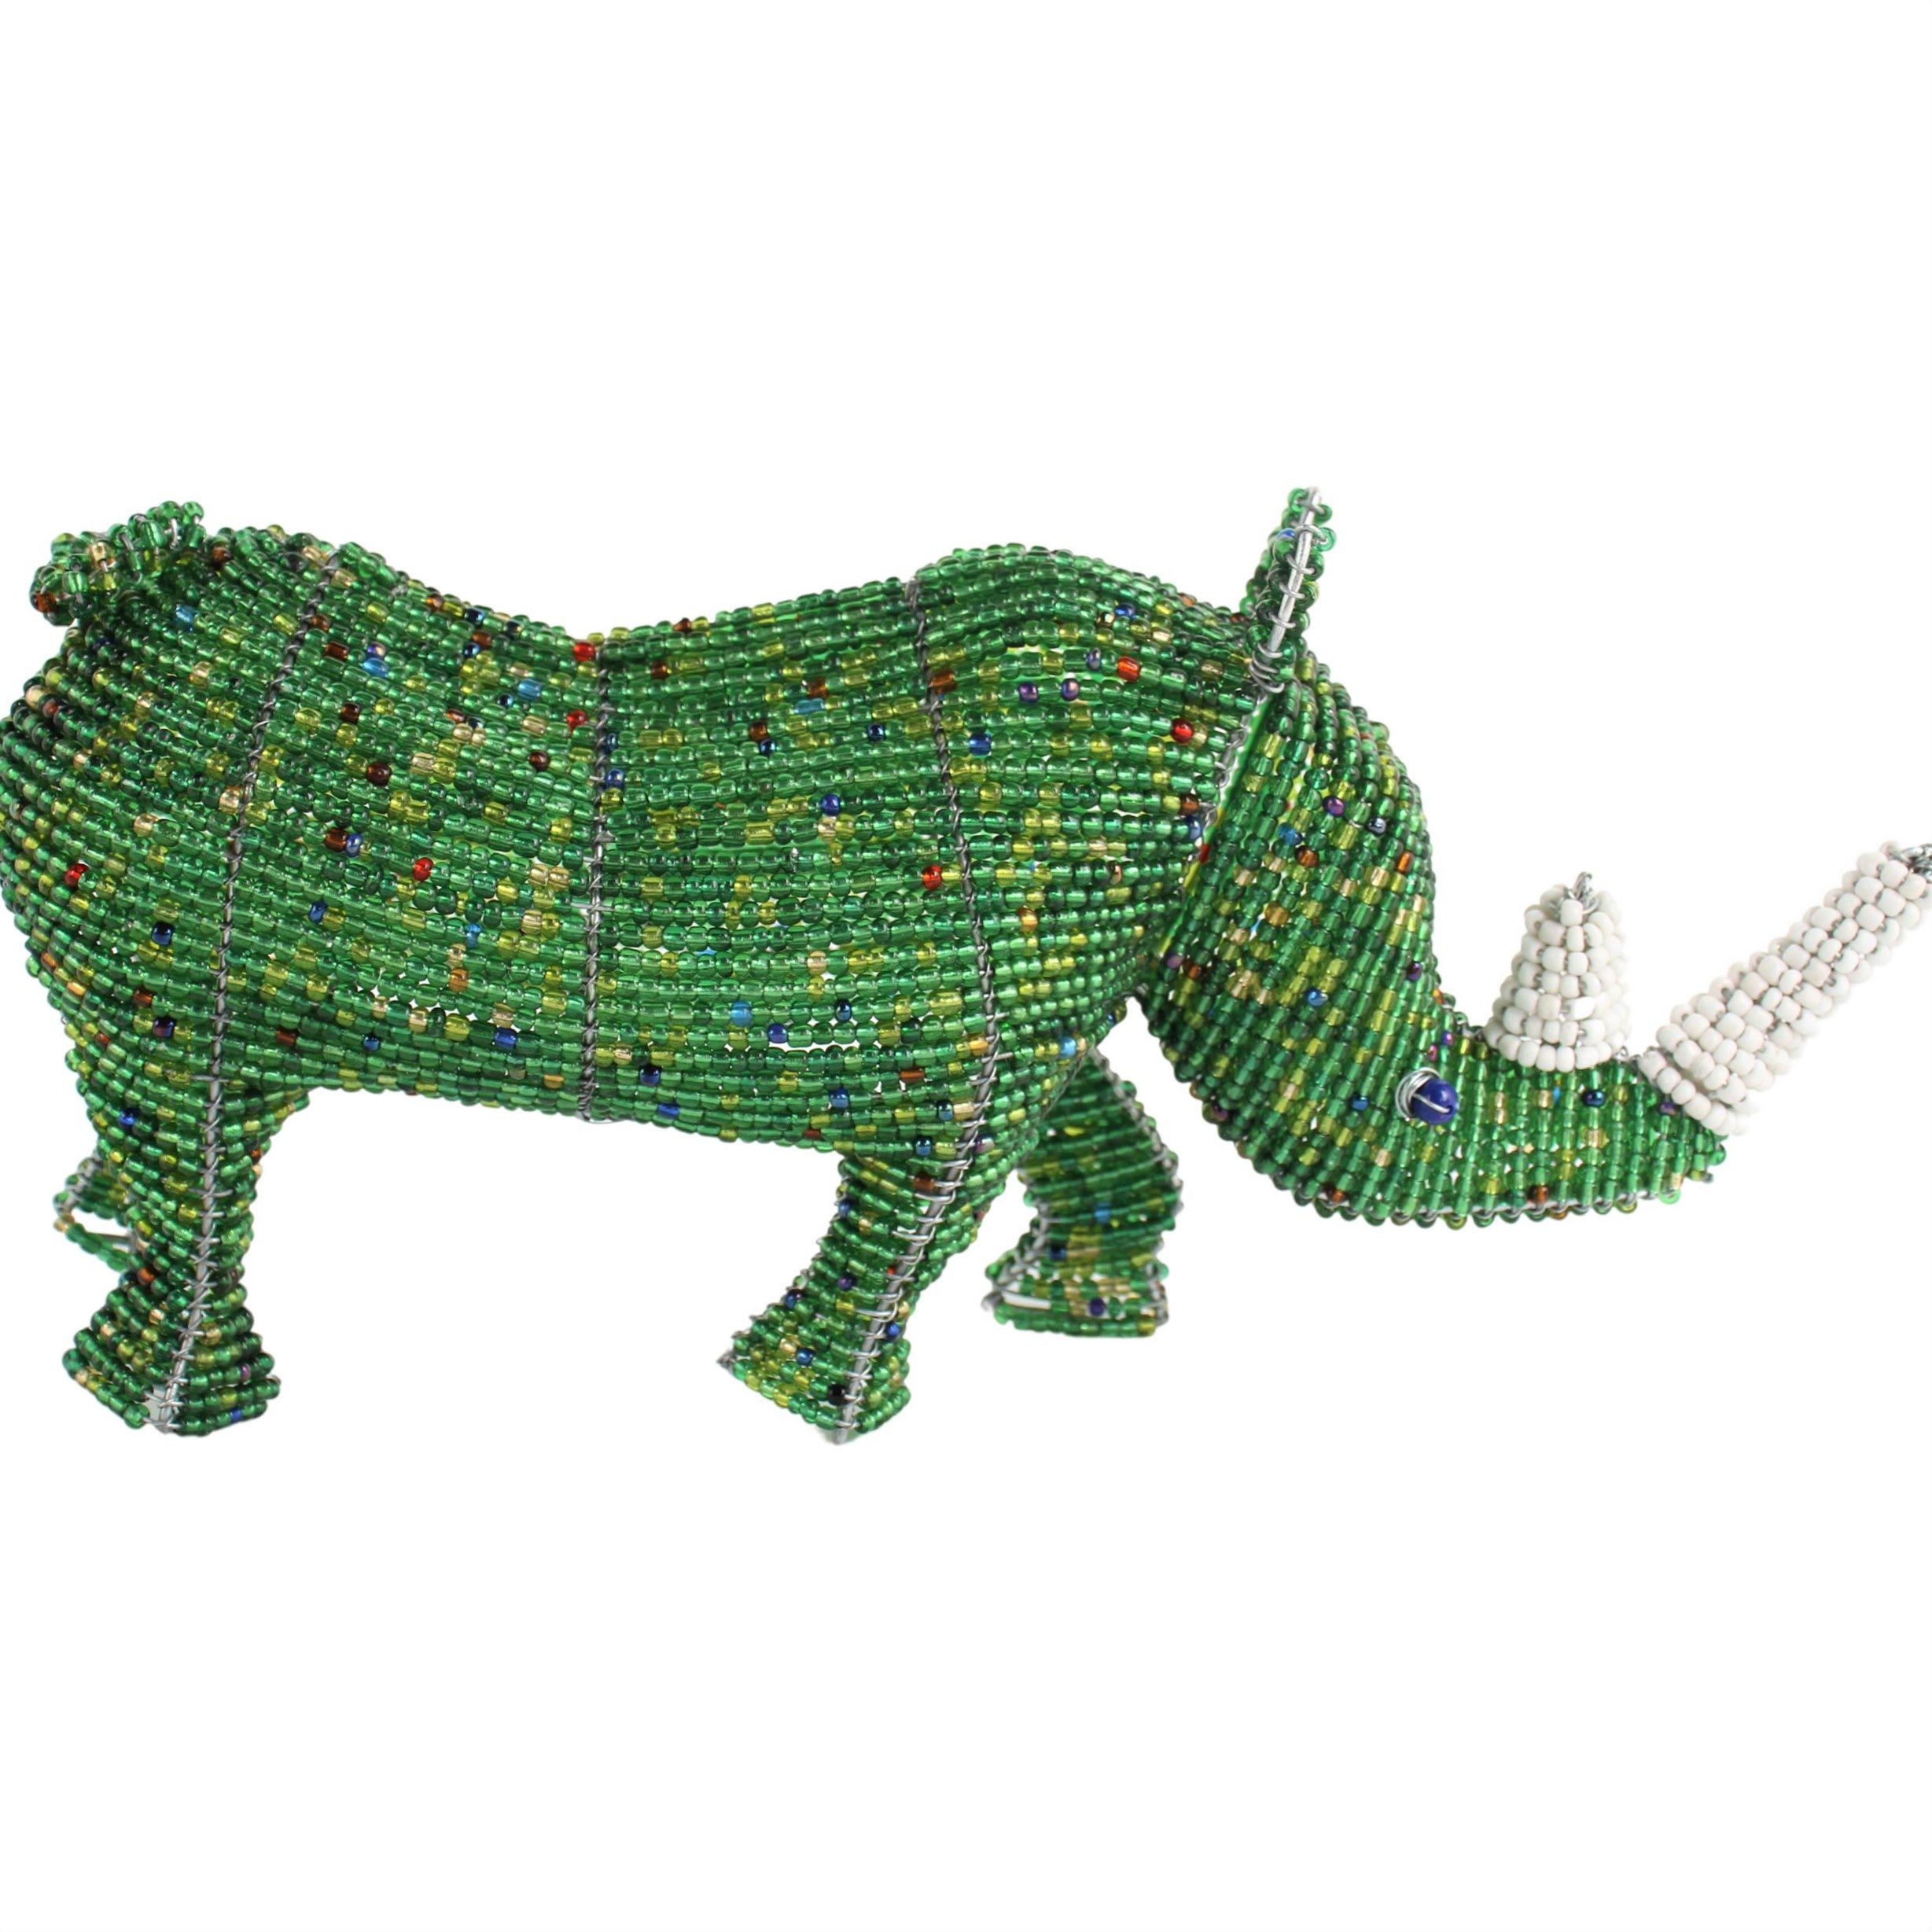 Shona Tribe Wire and Beaded Animals - Rhino ~7.1" Tall